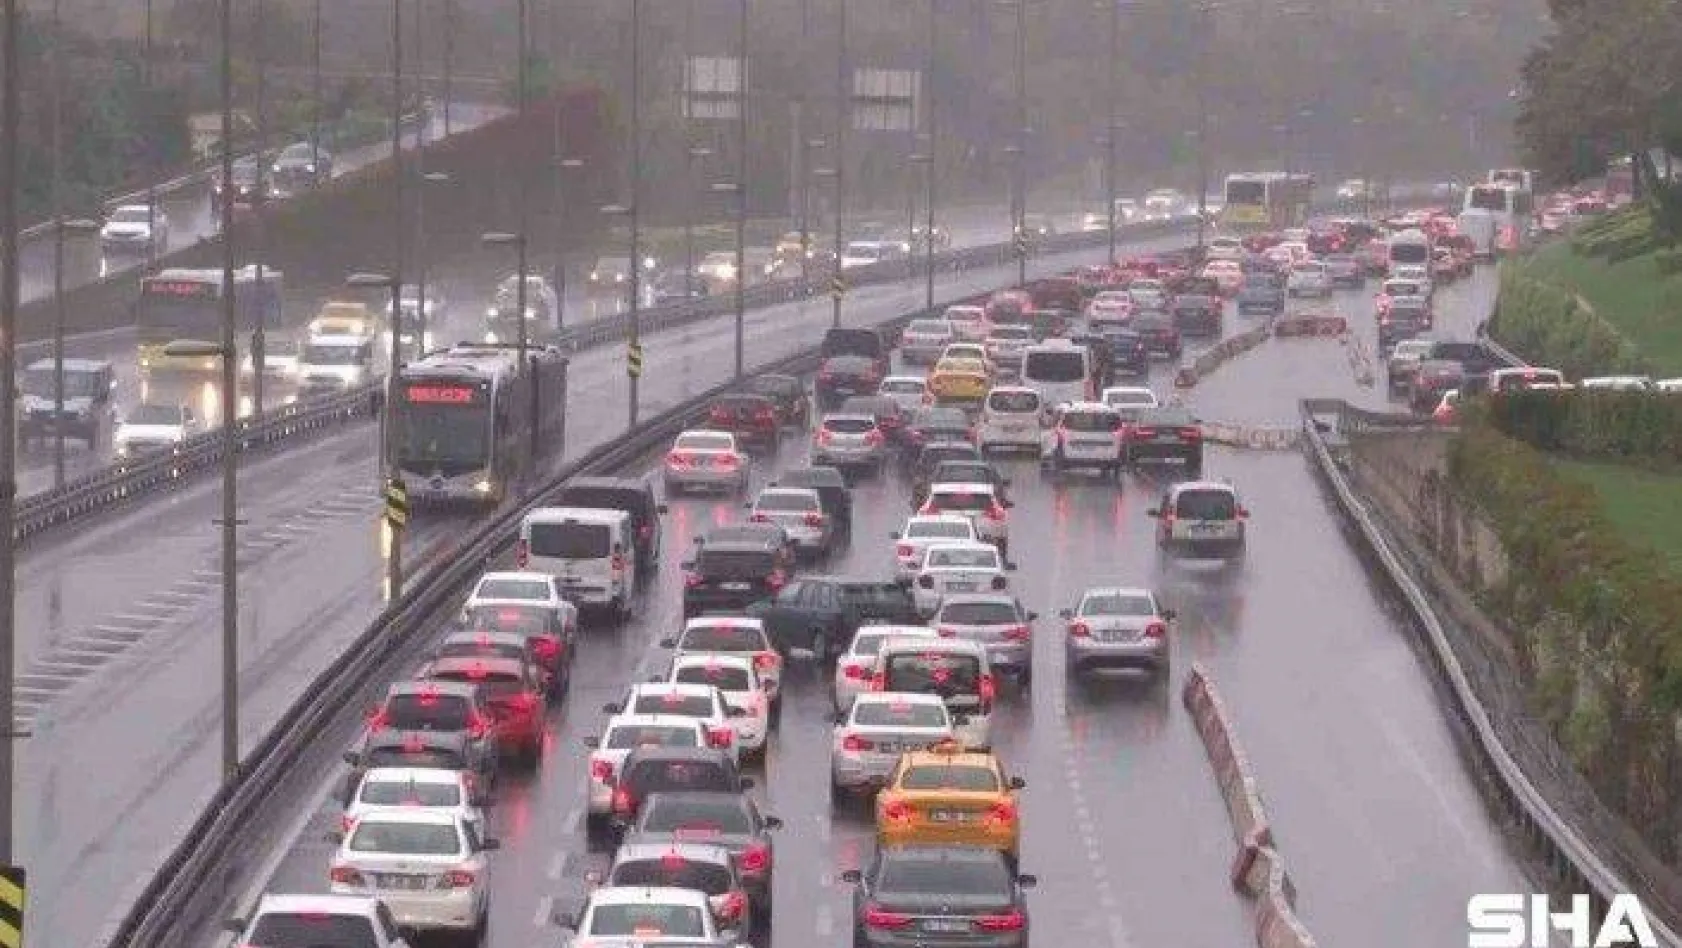 İstanbul'da yağış, trafiği olumsuz etkiledi